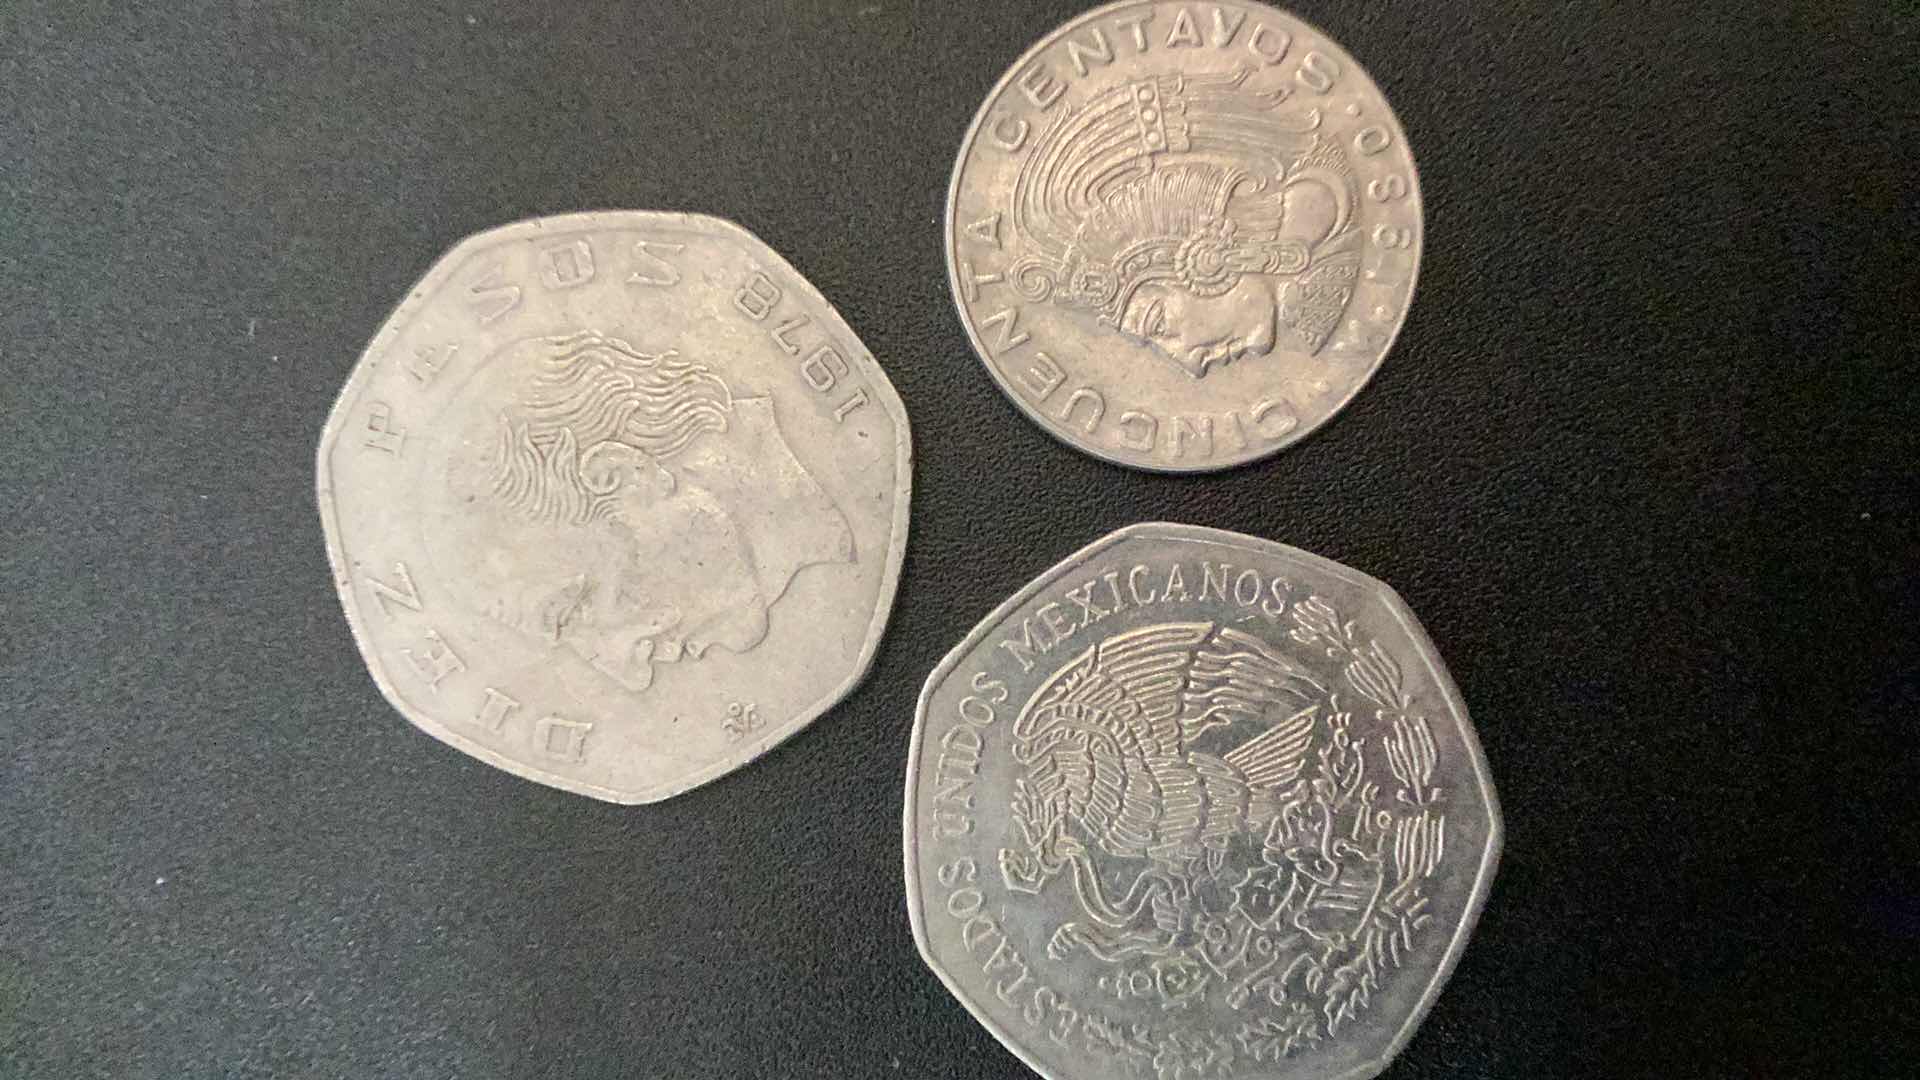 Photo 2 of 3 COLLECTIBLE COINS - ESTADOS UNIDOS MEXICANOS, 1978, 1980, 1980